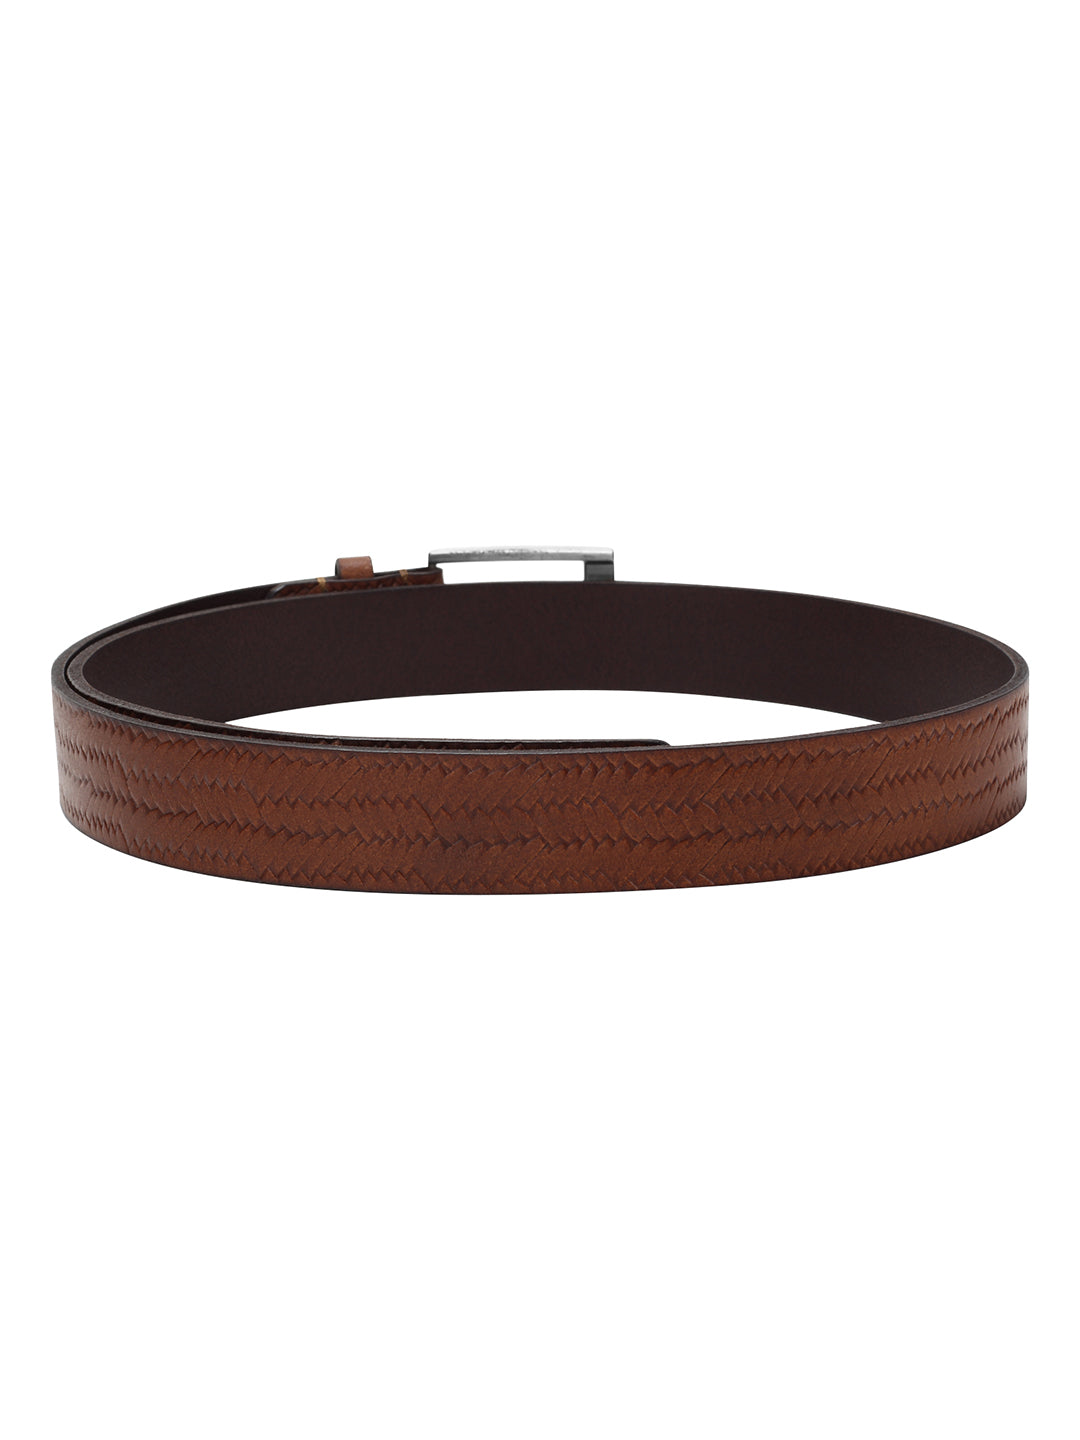 Weave pattern embossed brown belt